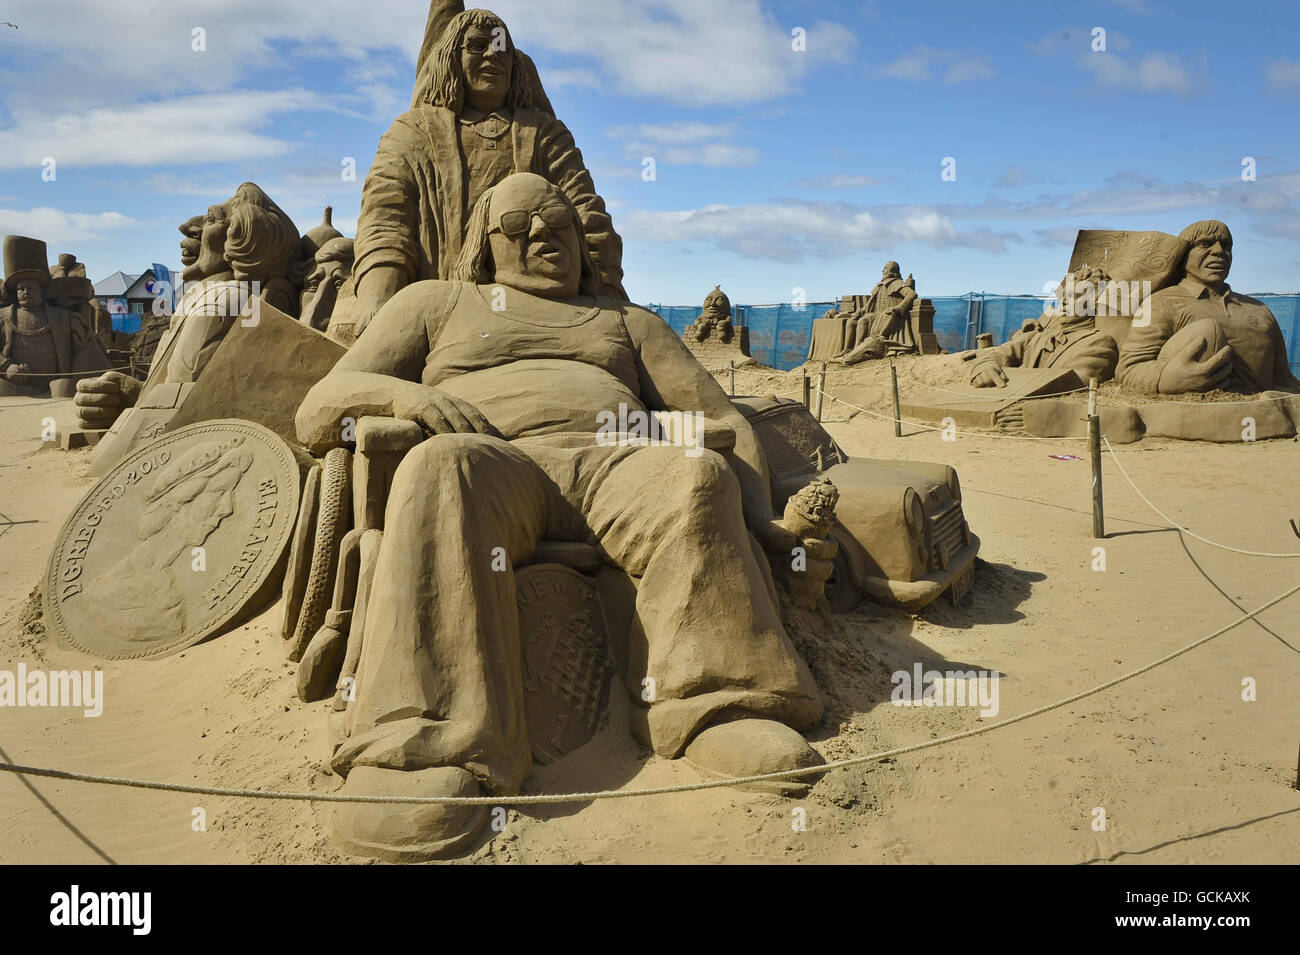 Une sculpture des personnages de Little Britain Lou et Andy dans le Weston-super-Mare Sand Sculpture Festival sur la plage, qui cette année a le thème et la célébration de toutes choses britanniques. Banque D'Images